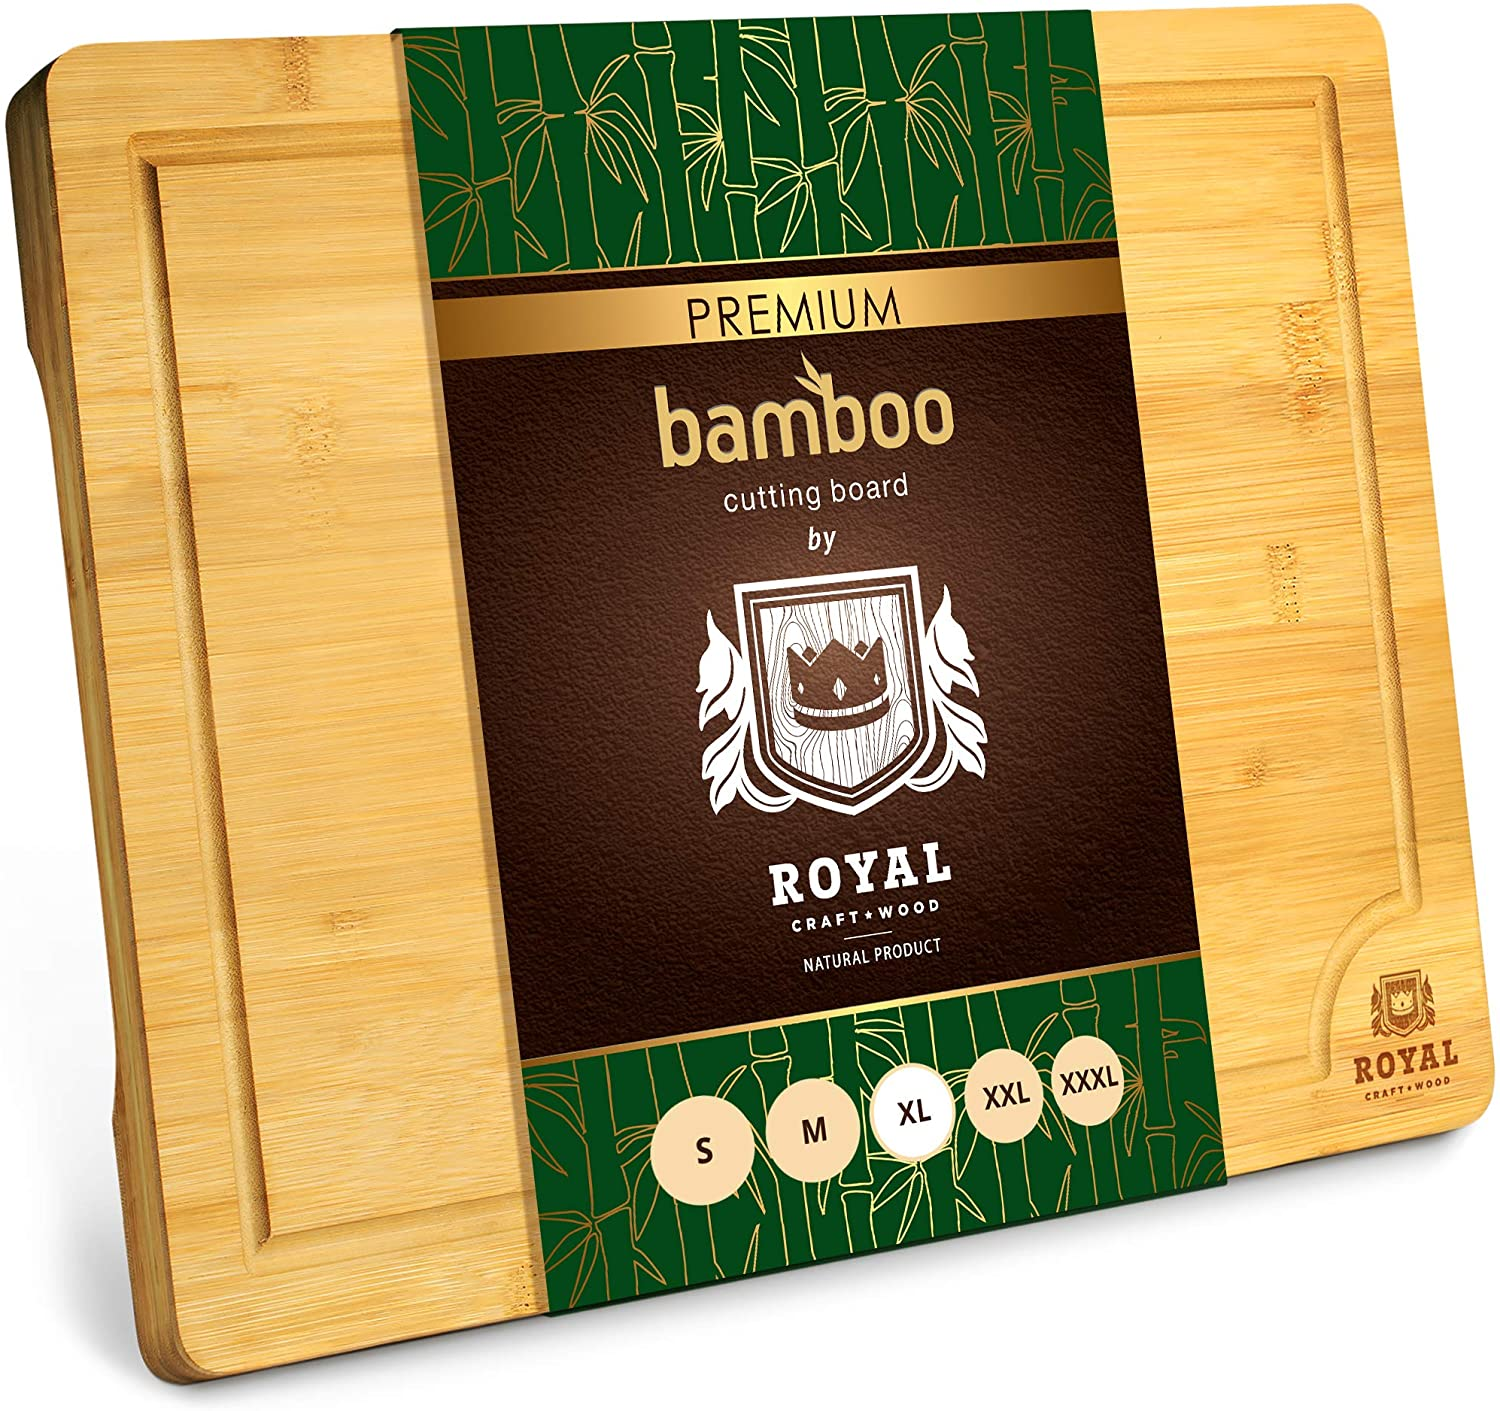 Extra Large Organic Bamboo Cutting Board $16.03